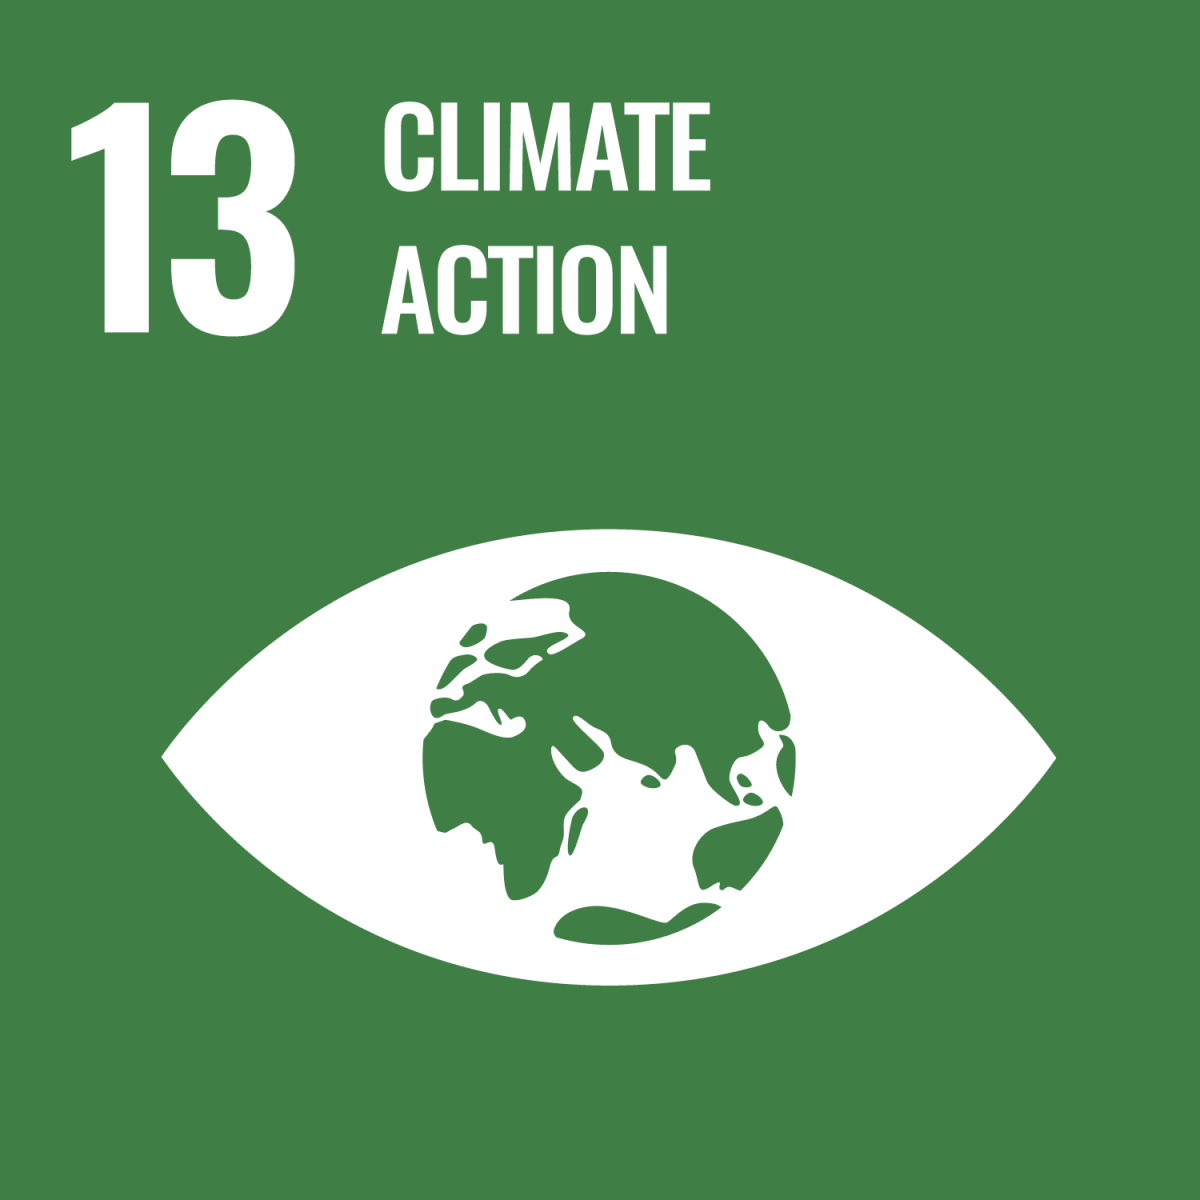 Shows UN SDG 13 Climate Action